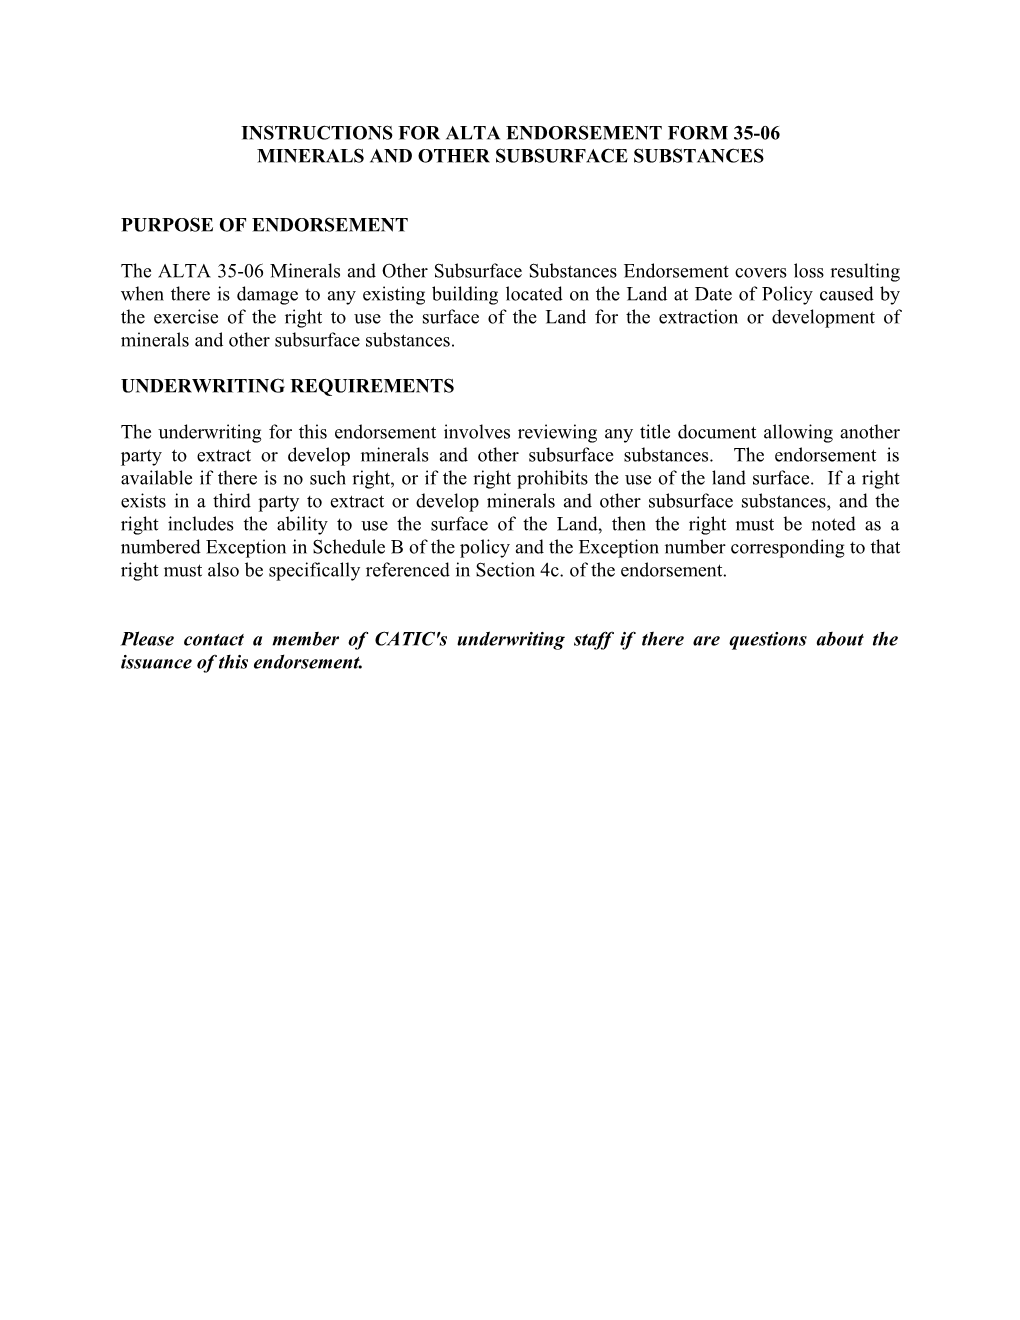 Instructions for Alta Endorsement Form 35-06